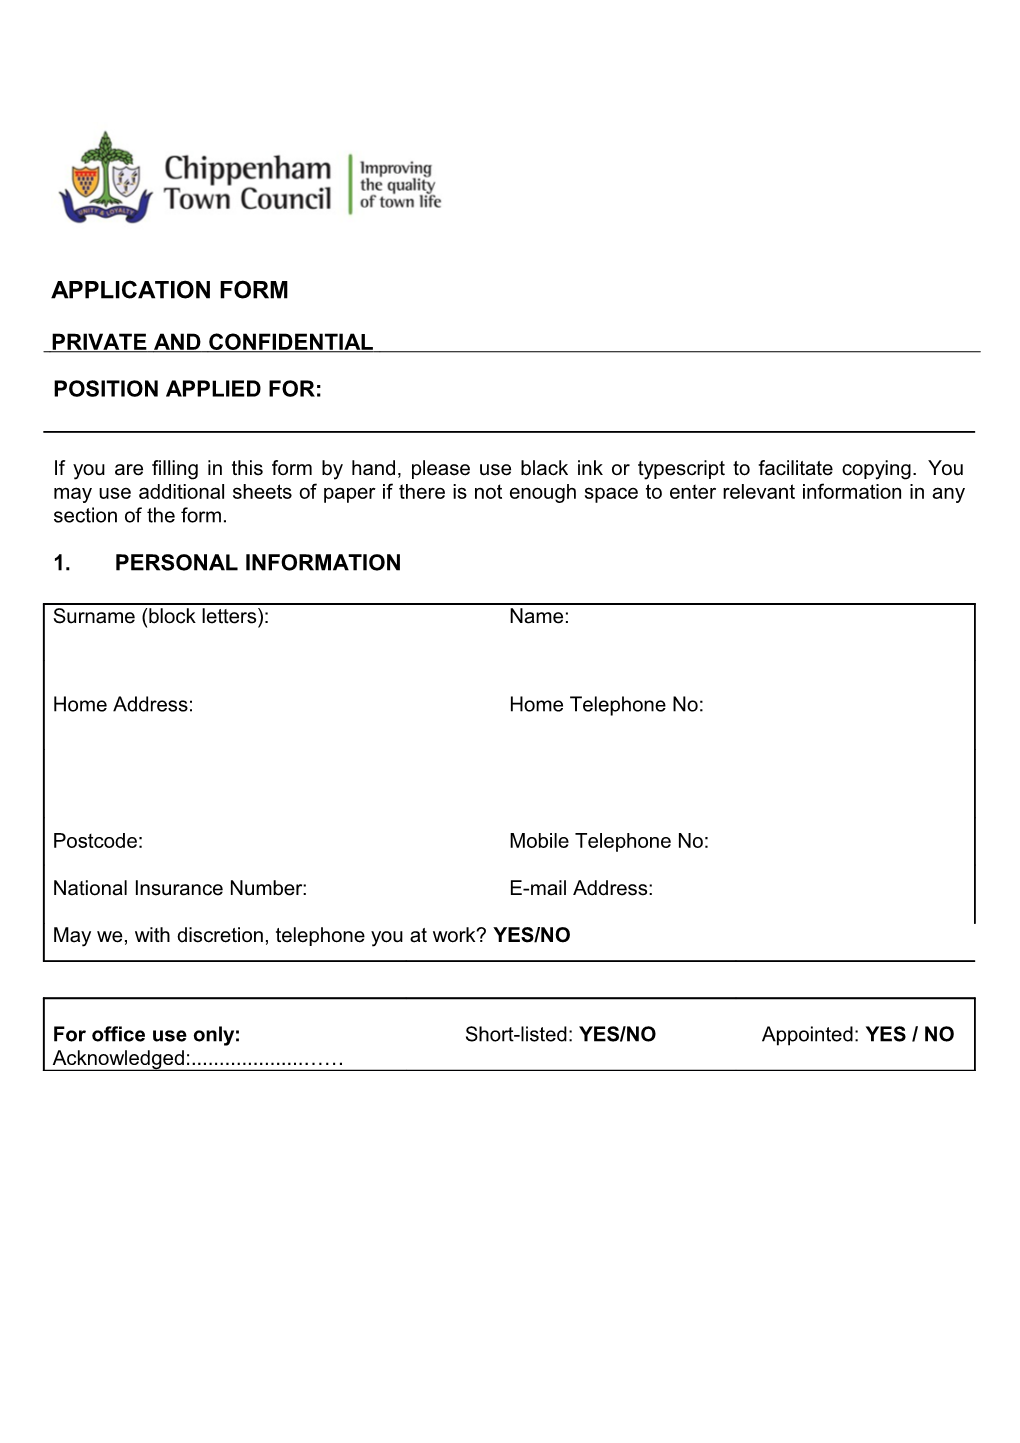 Hart District Council, Job Application Form